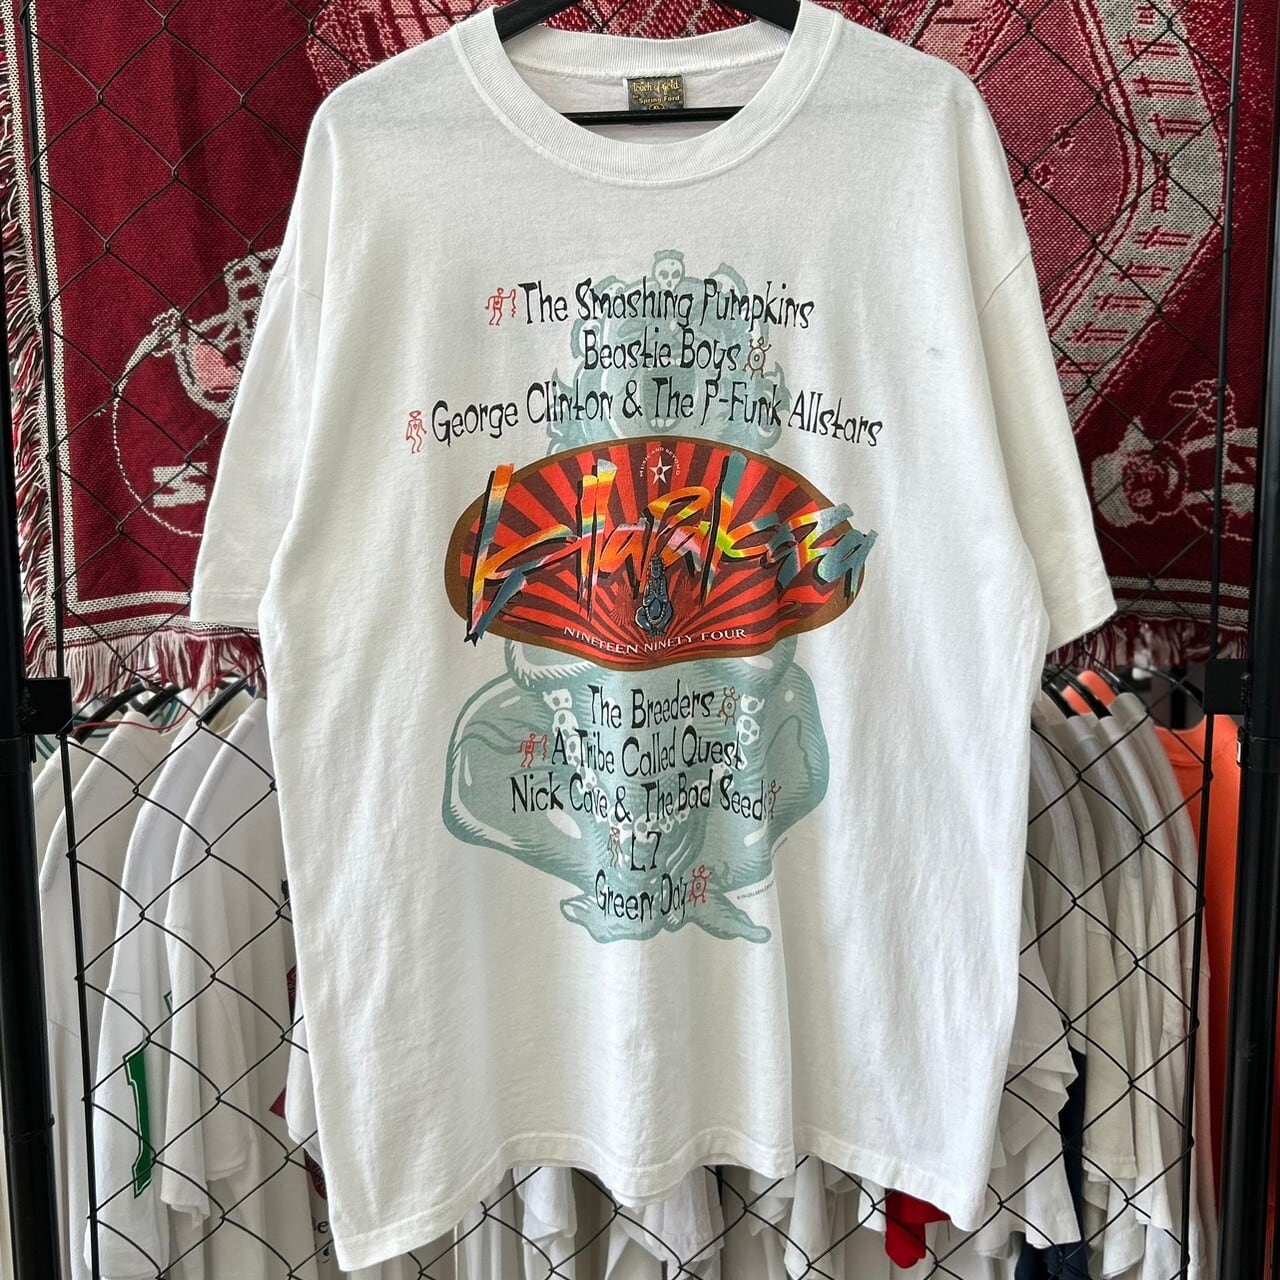 【美品】LOLLAPALOOZA 90s ヴィンテージ　バンドTシャツ